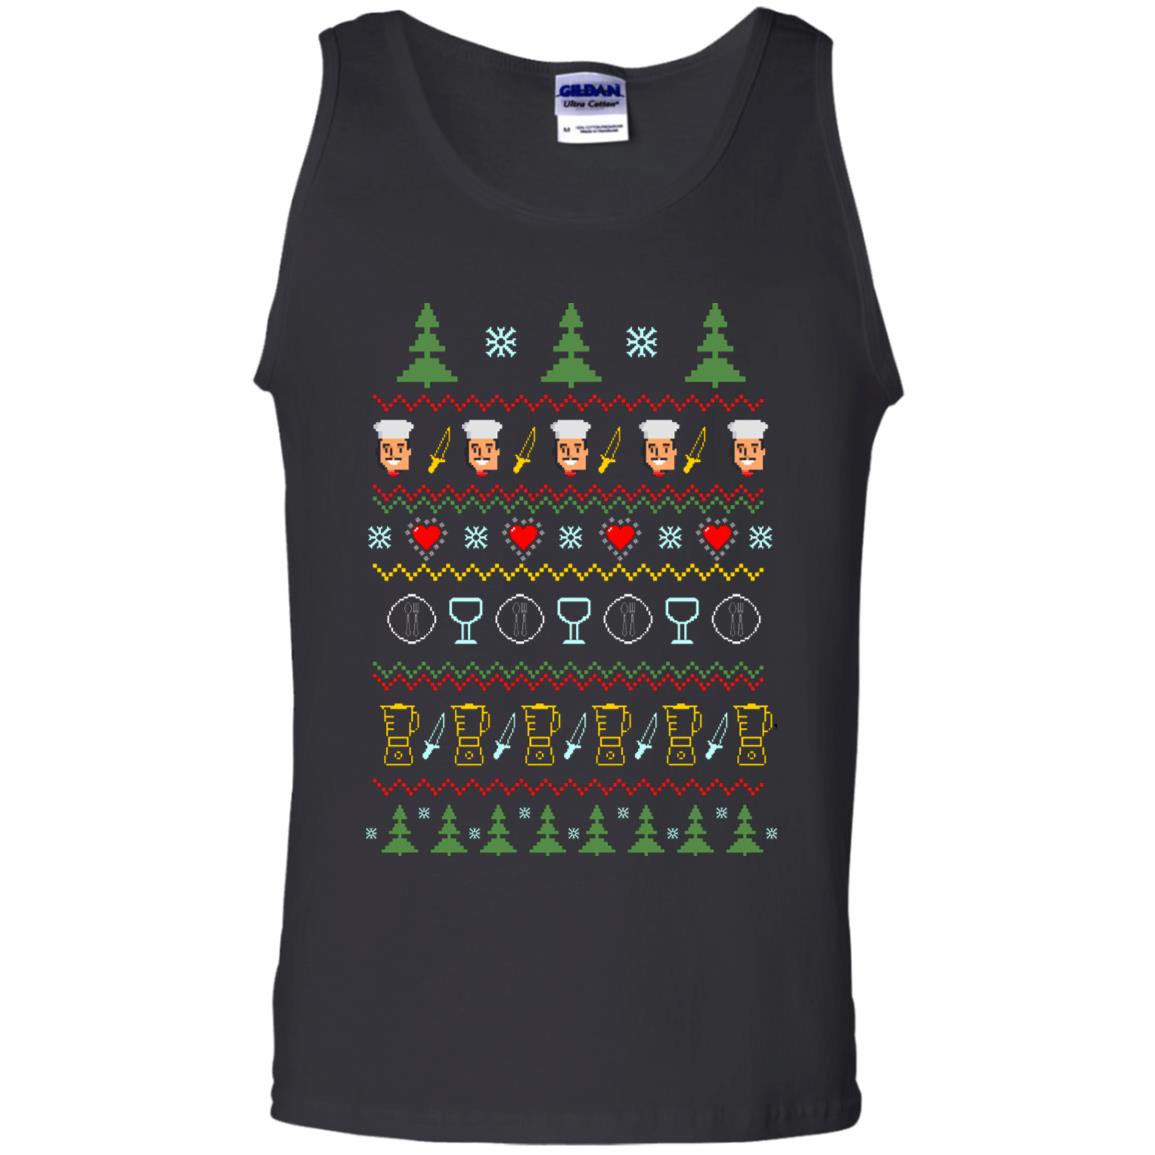 Chef Christmas X-mas Gift Shirt For Cooking LoversG220 Gildan 100% Cotton Tank Top